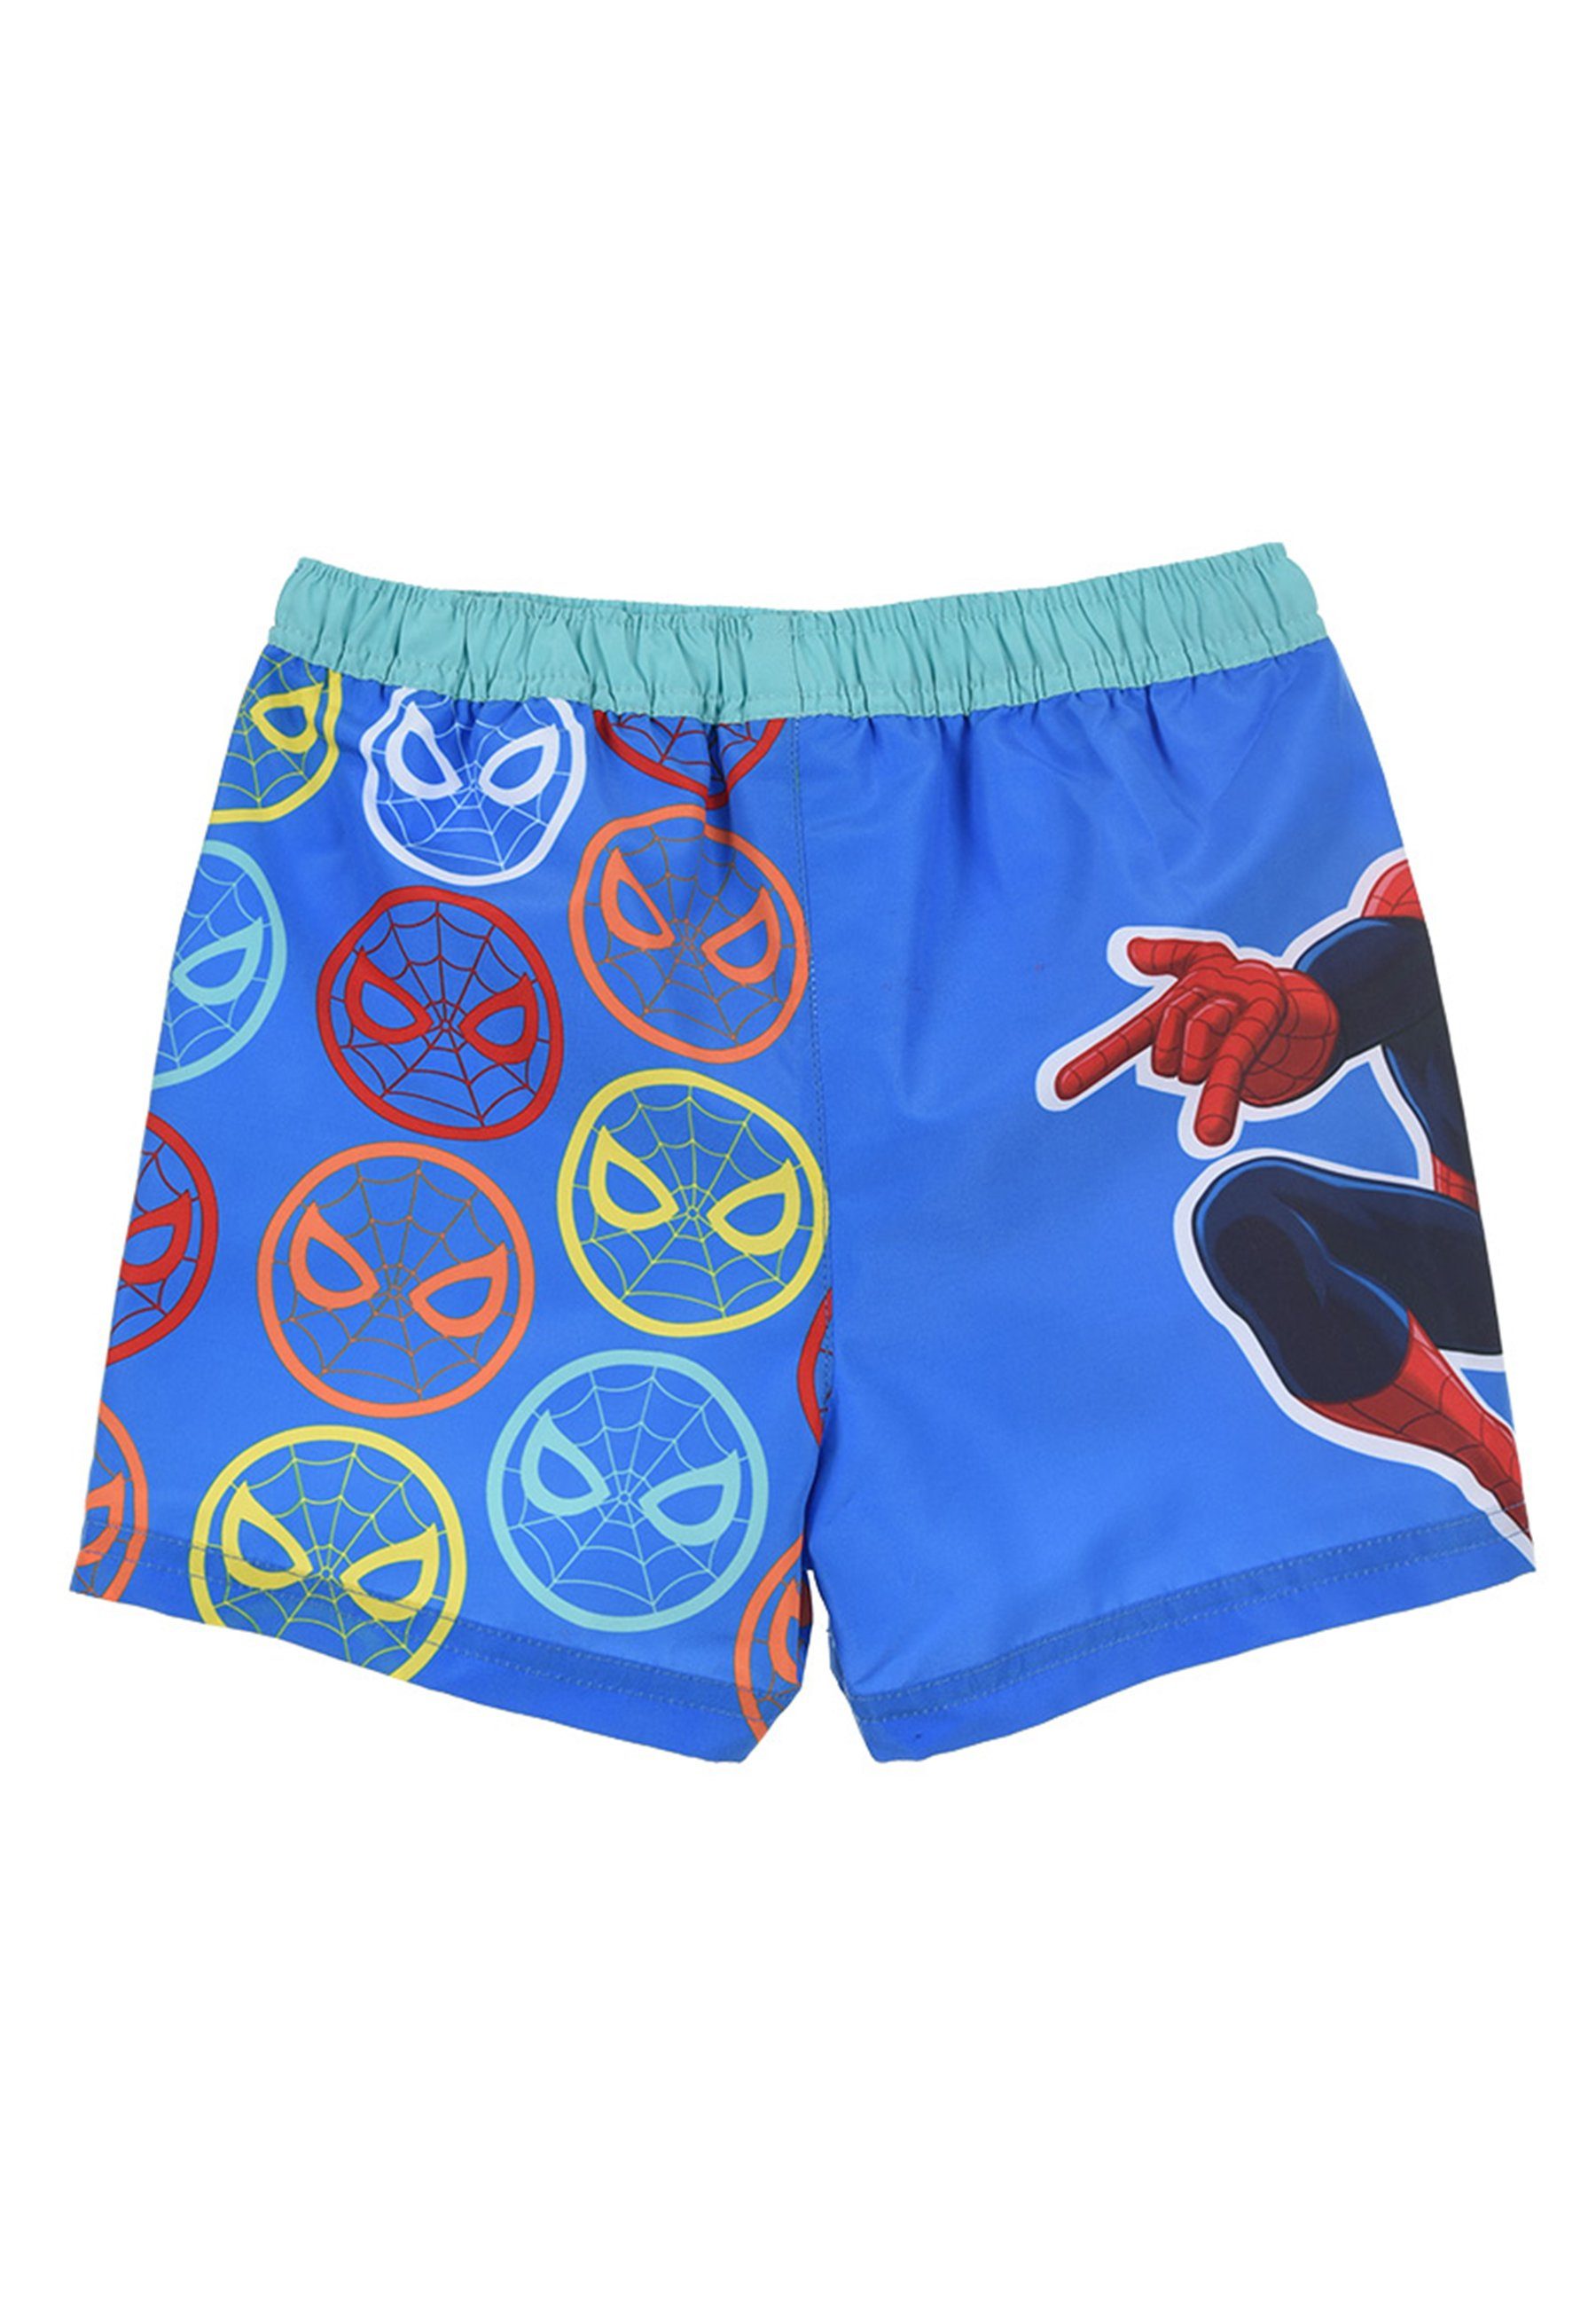 Blau Badeshorts Bermuda-Shorts Badehose Marvel Jungen Badepants Kinder Spiderman